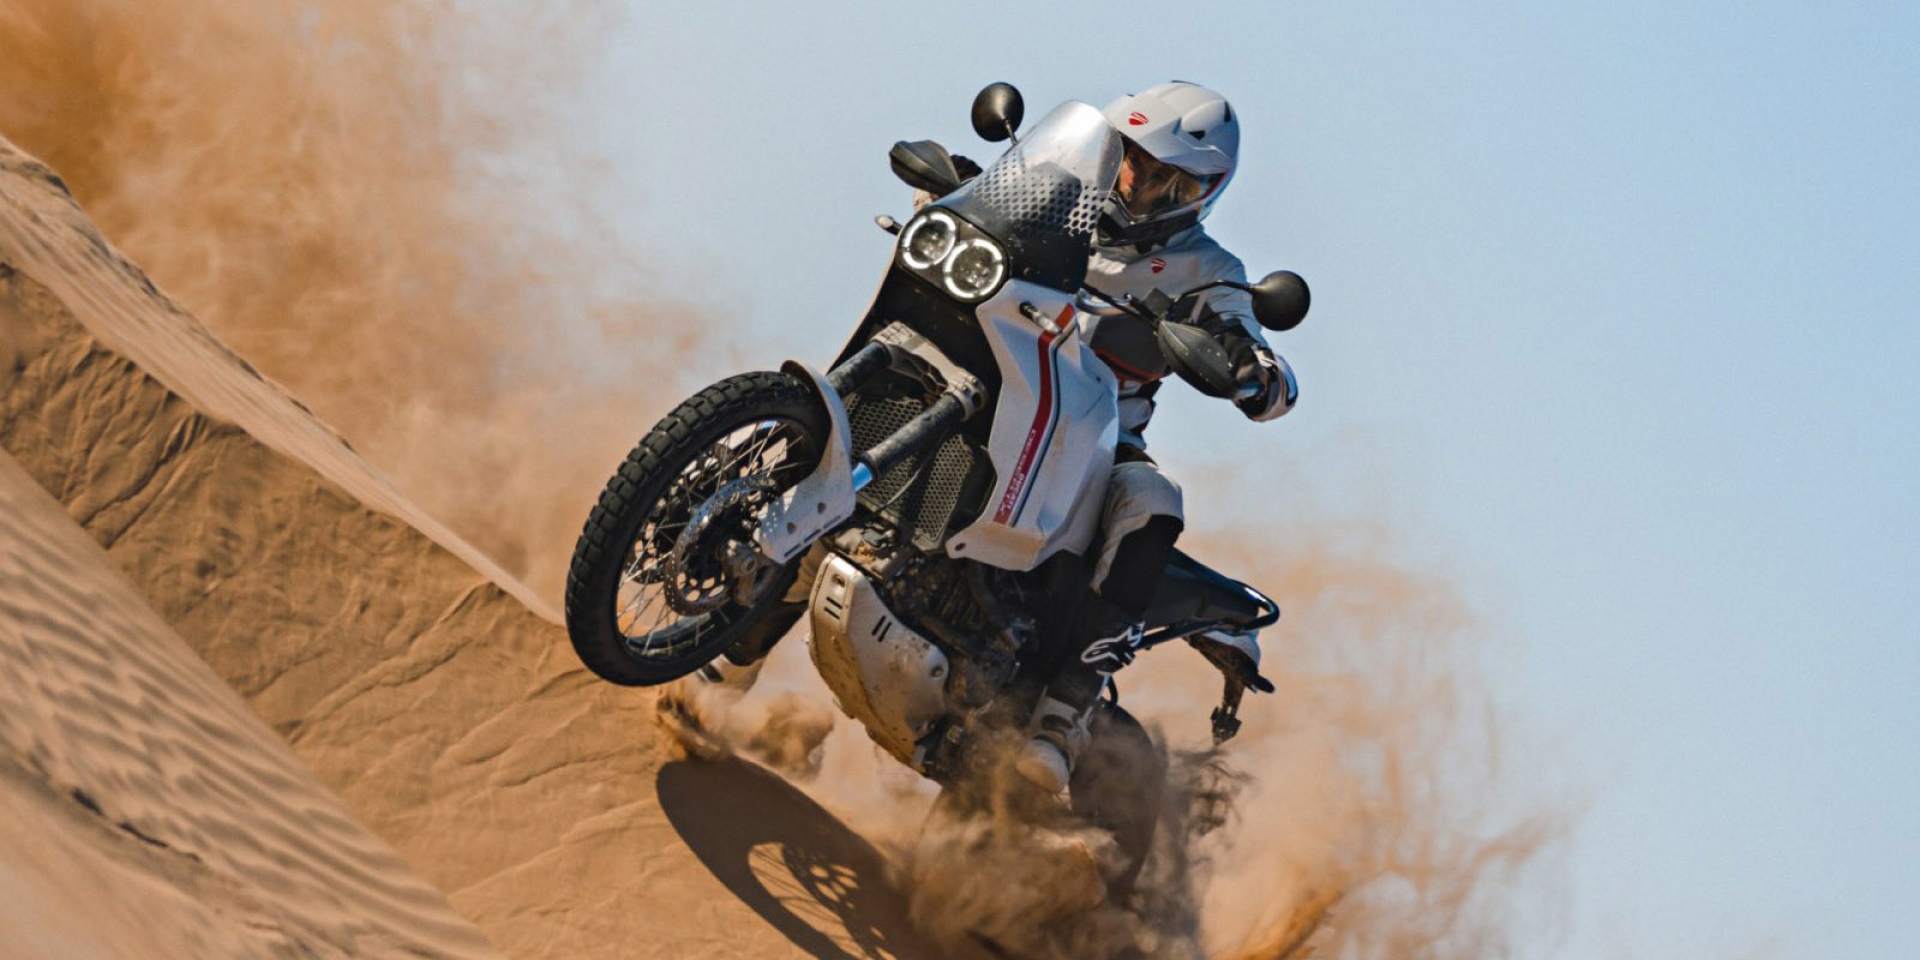 征服你最狂野的夢想 Ducati DesertX 99.8萬預購開跑!